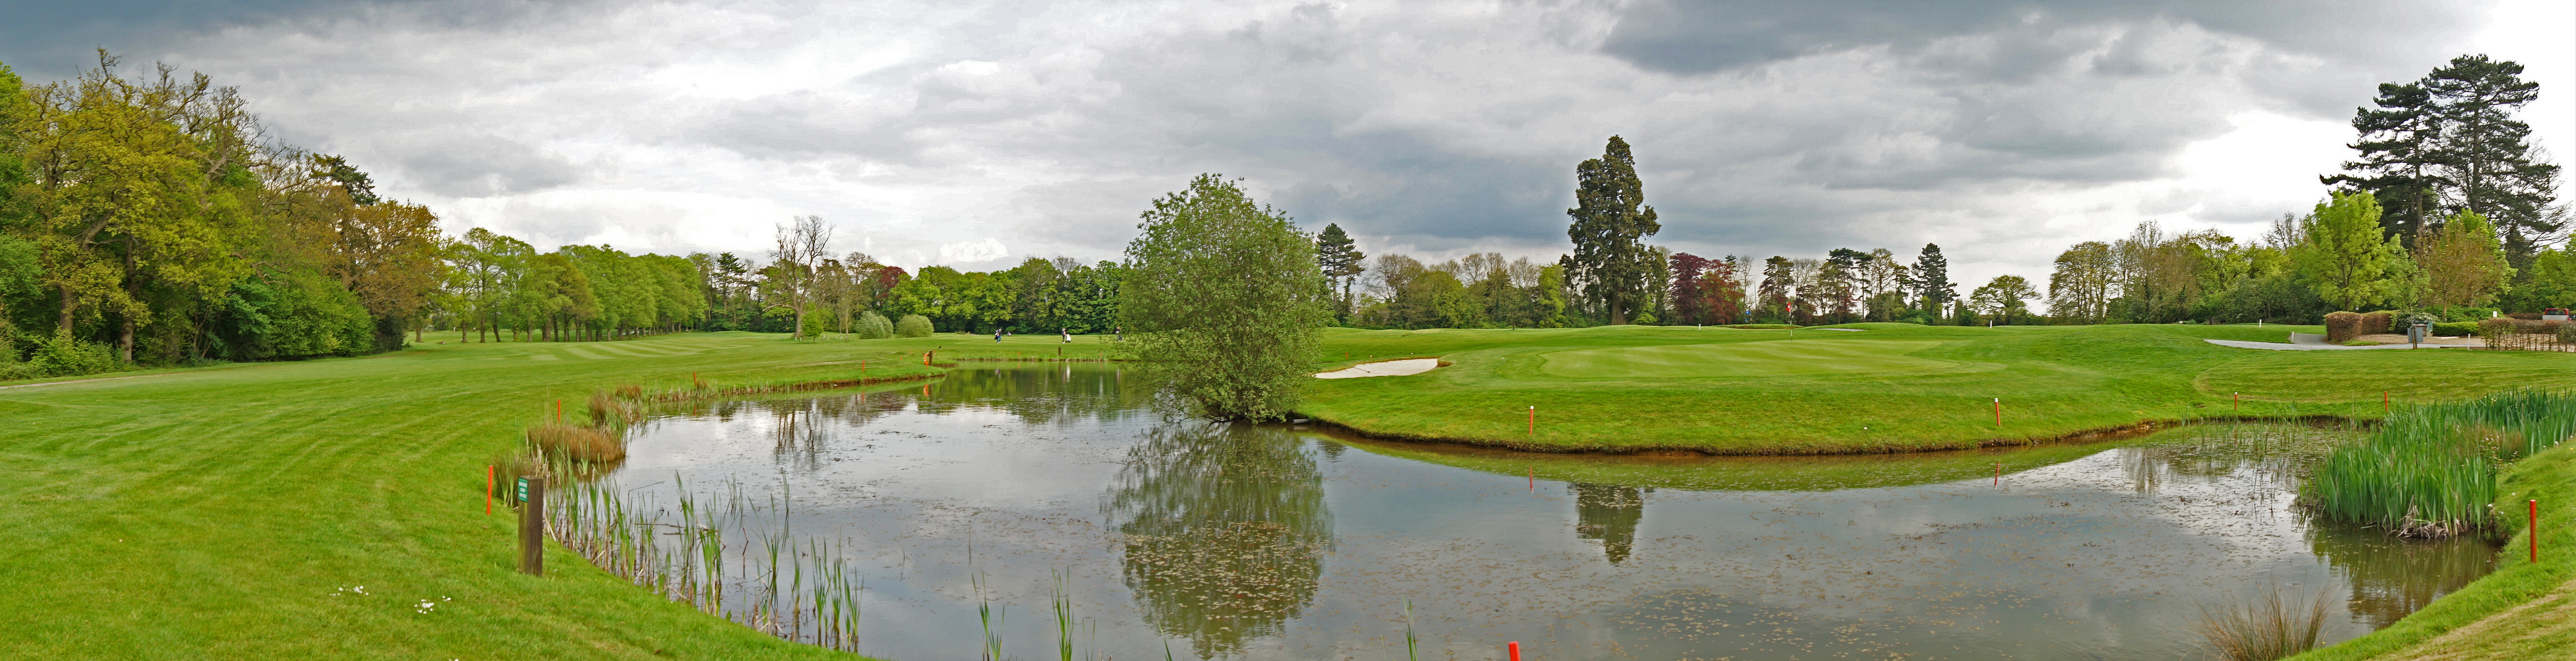 Society of Hertfordshire Golf Captains - SOHGC |